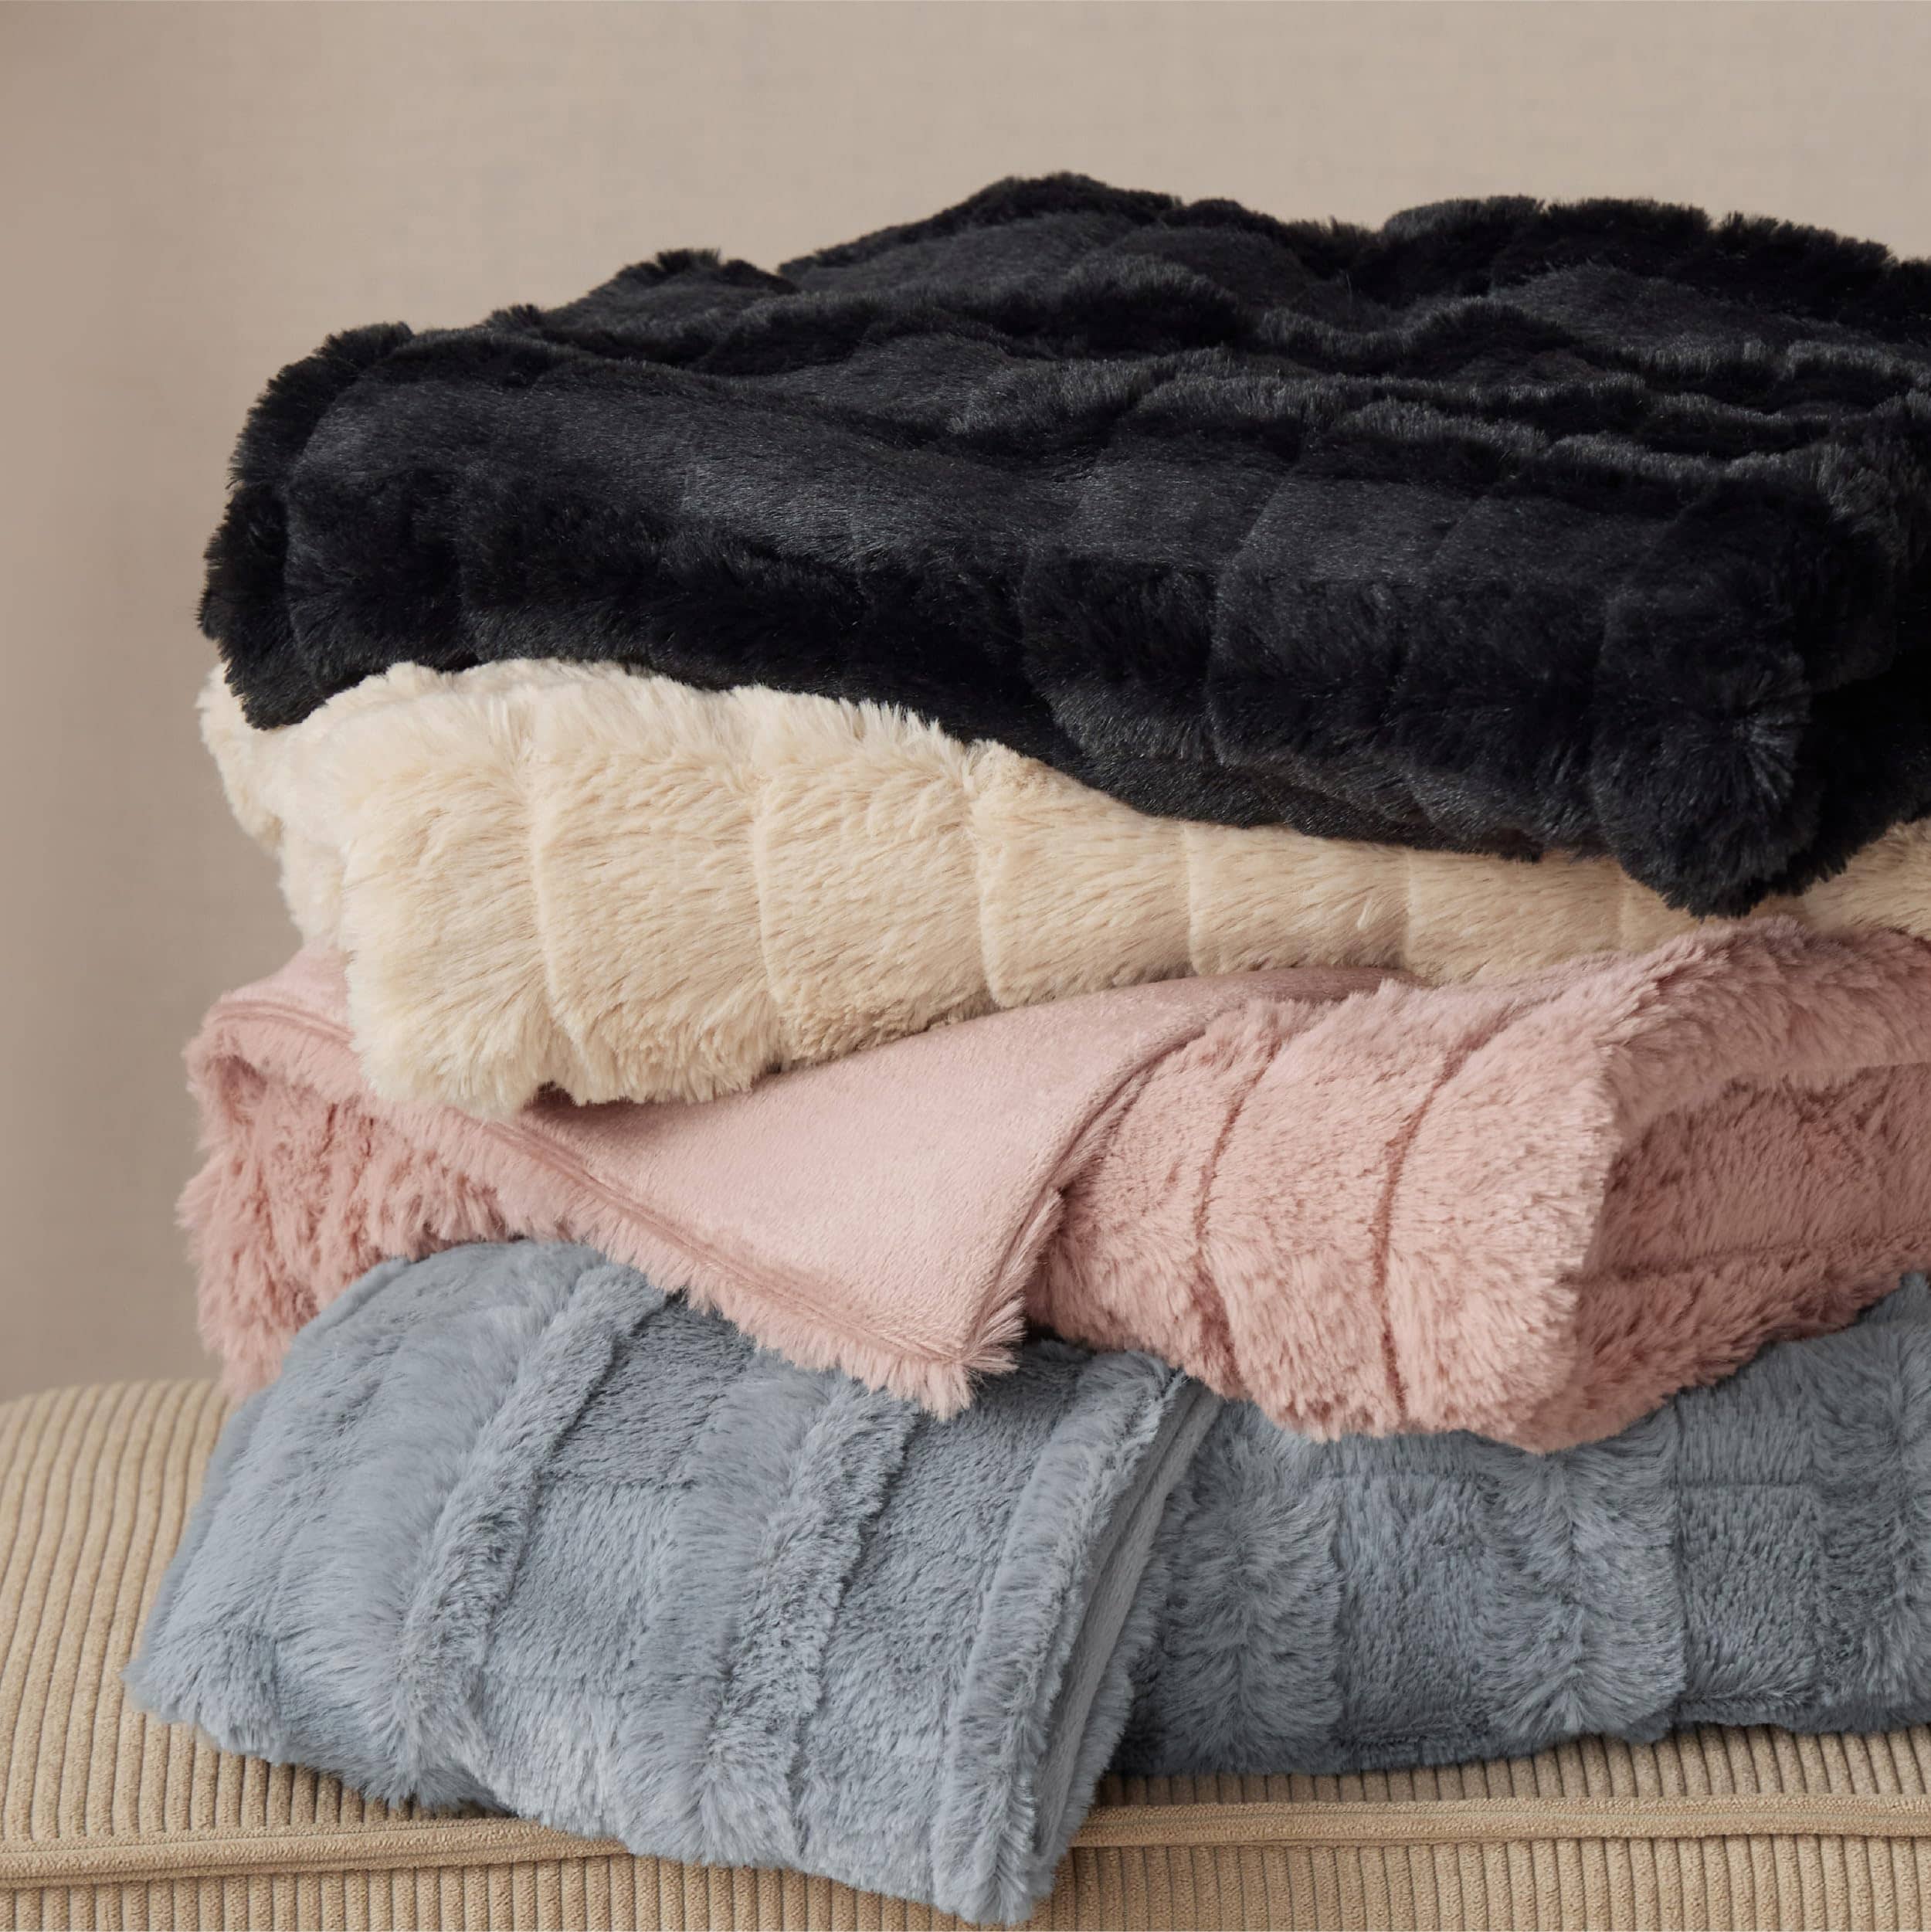 Bedsure Fluffy Comforter Cover Set - Faux Fur Duvet Cover Queen Size, Deep  Beige Plush Quilt Cover, …See more Bedsure Fluffy Comforter Cover Set 